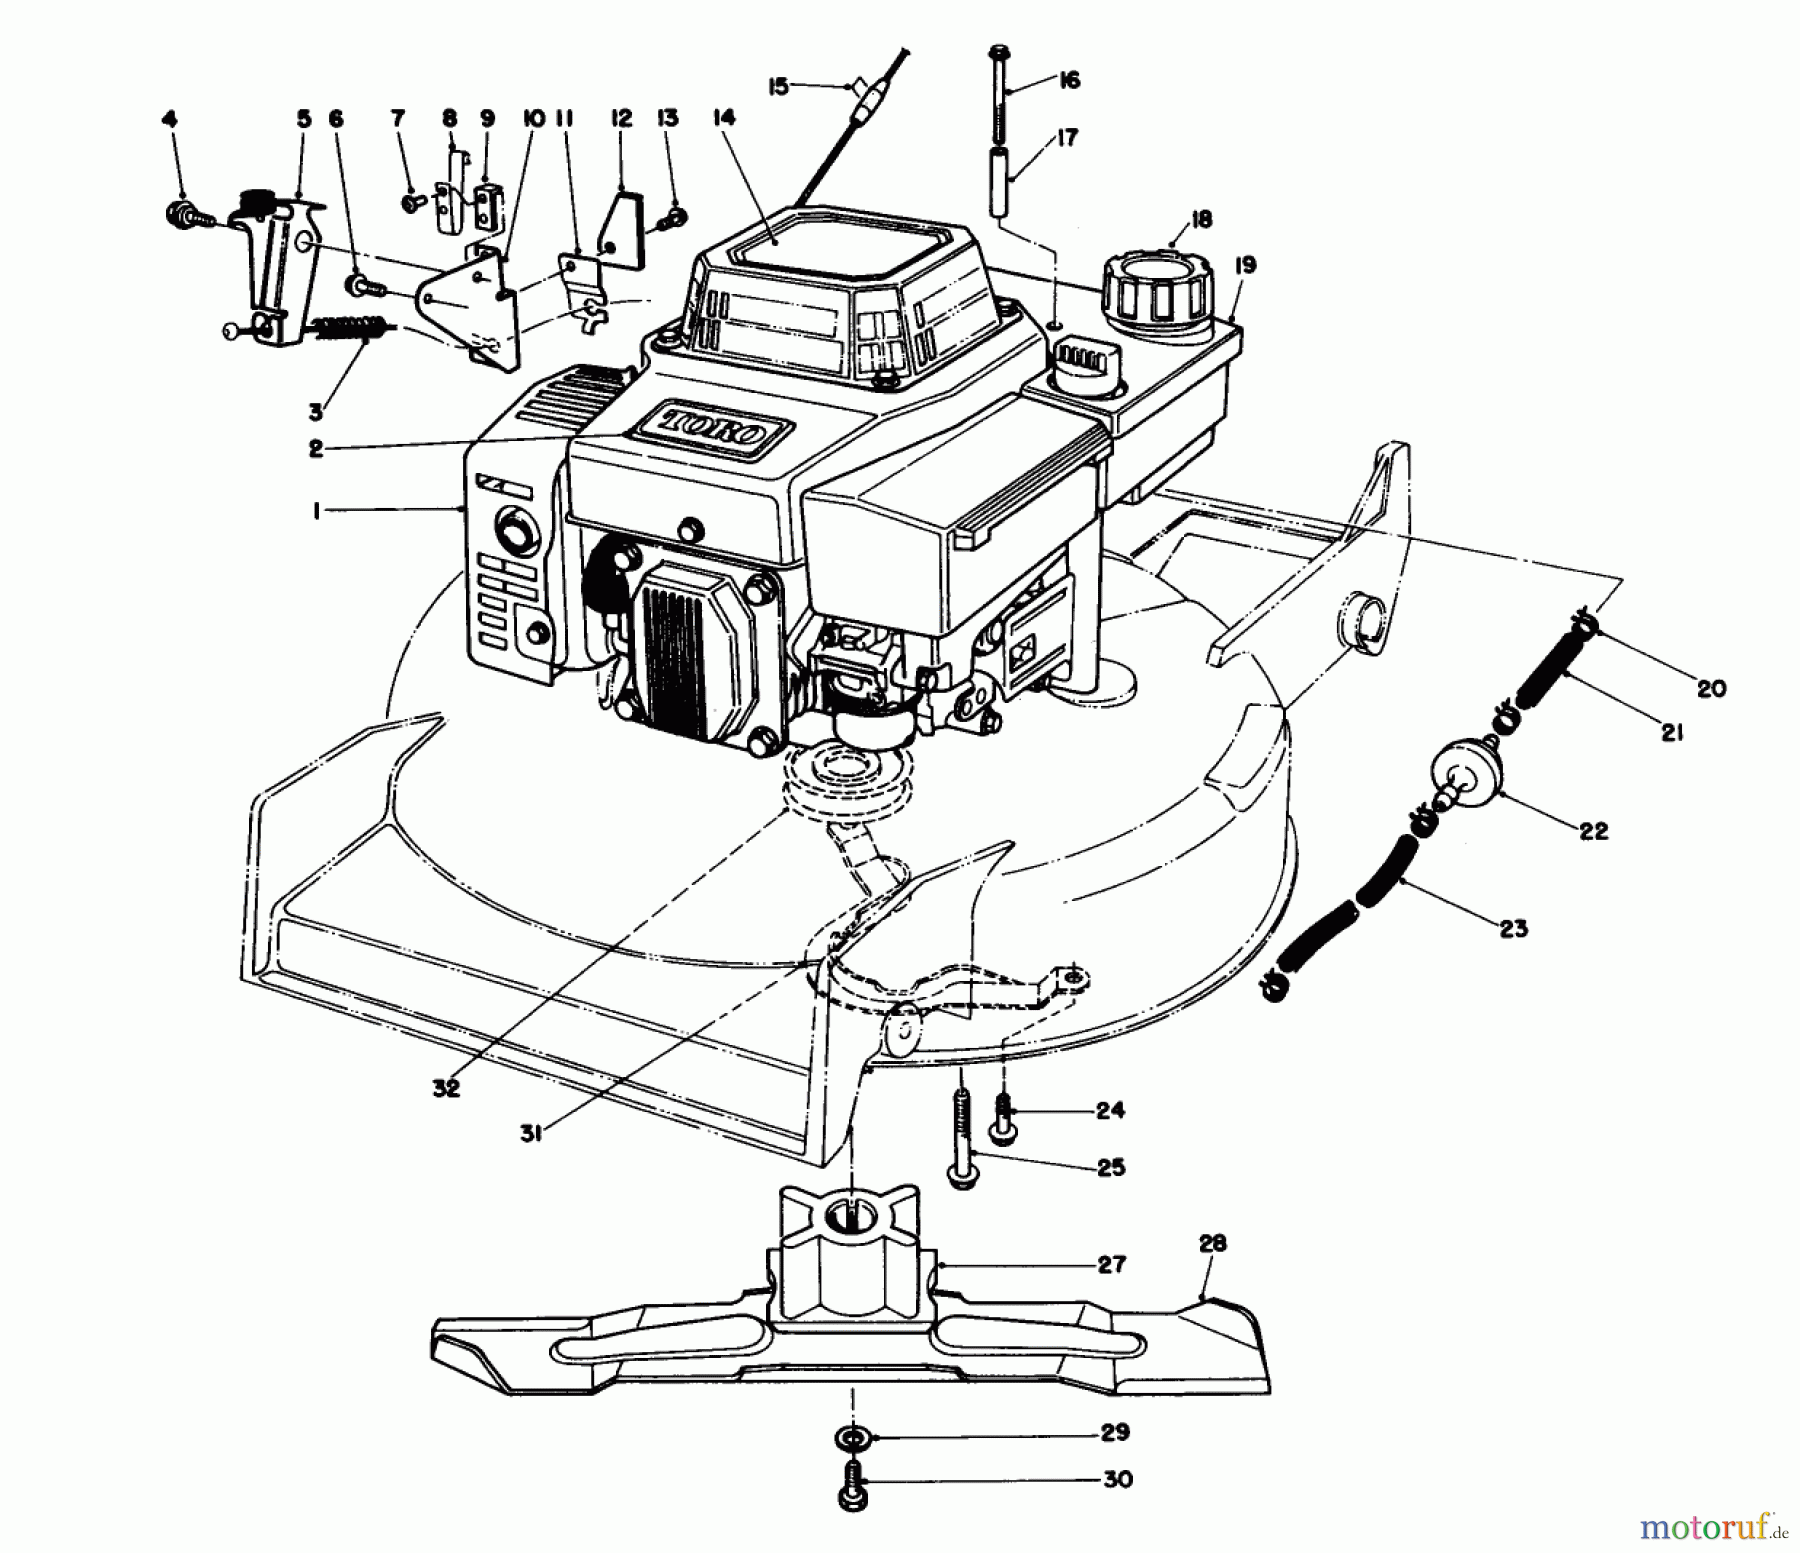  Toro Neu Mowers, Walk-Behind Seite 1 20620 - Toro Lawnmower, 1988 (8000001-8999999) ENGINE ASSEMBLY